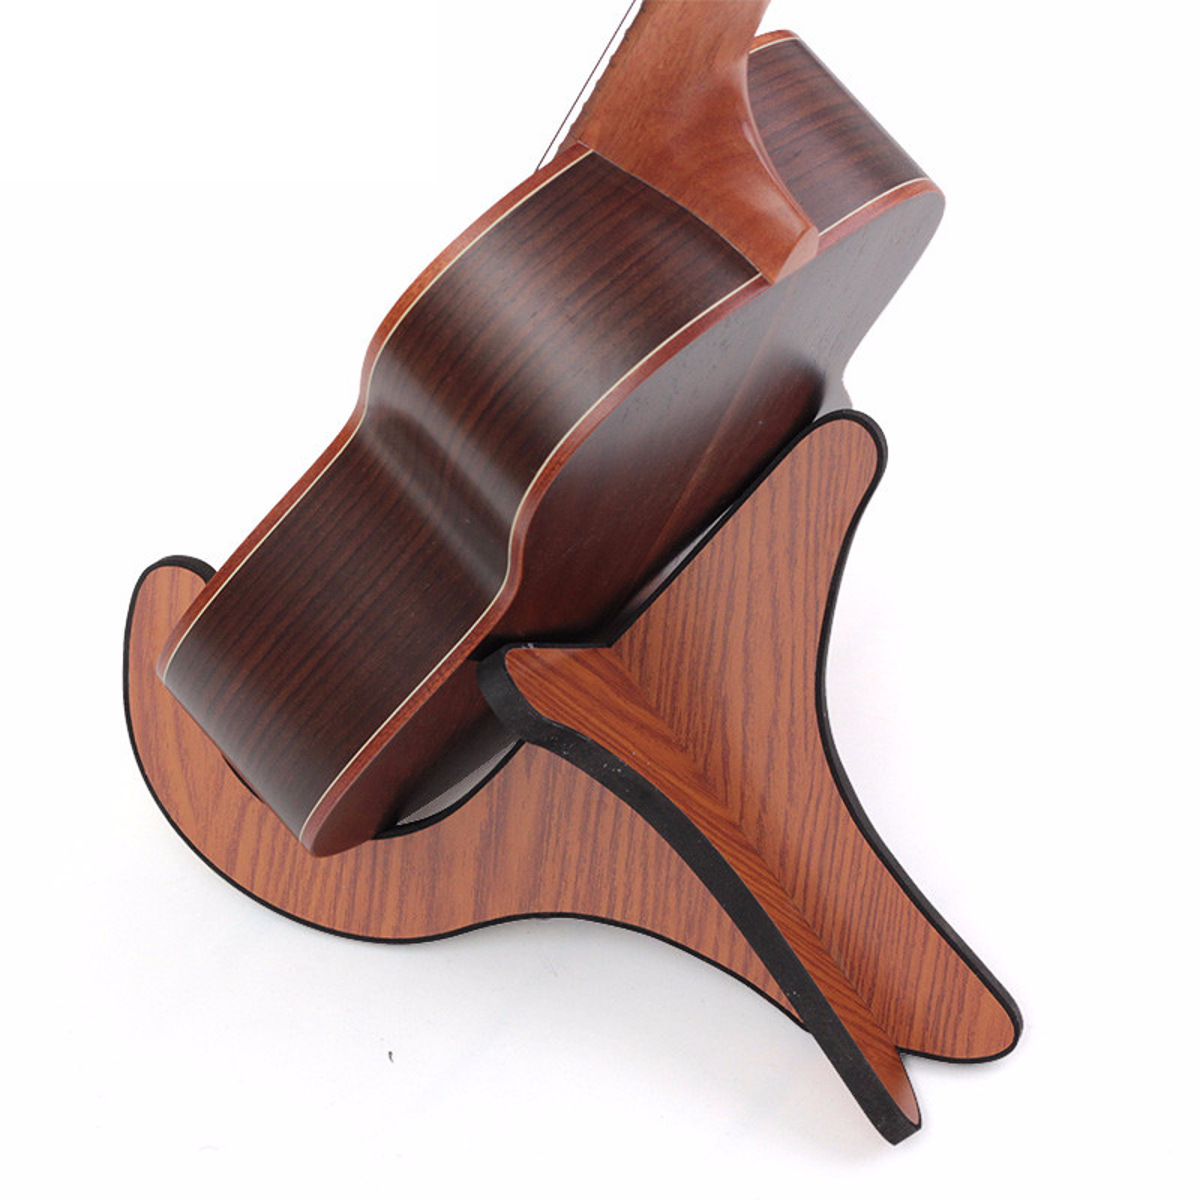 Multifunctional-Wooden-Guitar-Ukulele-Tablet-Holder-Desktop-Bracket-Stand-1876166-11